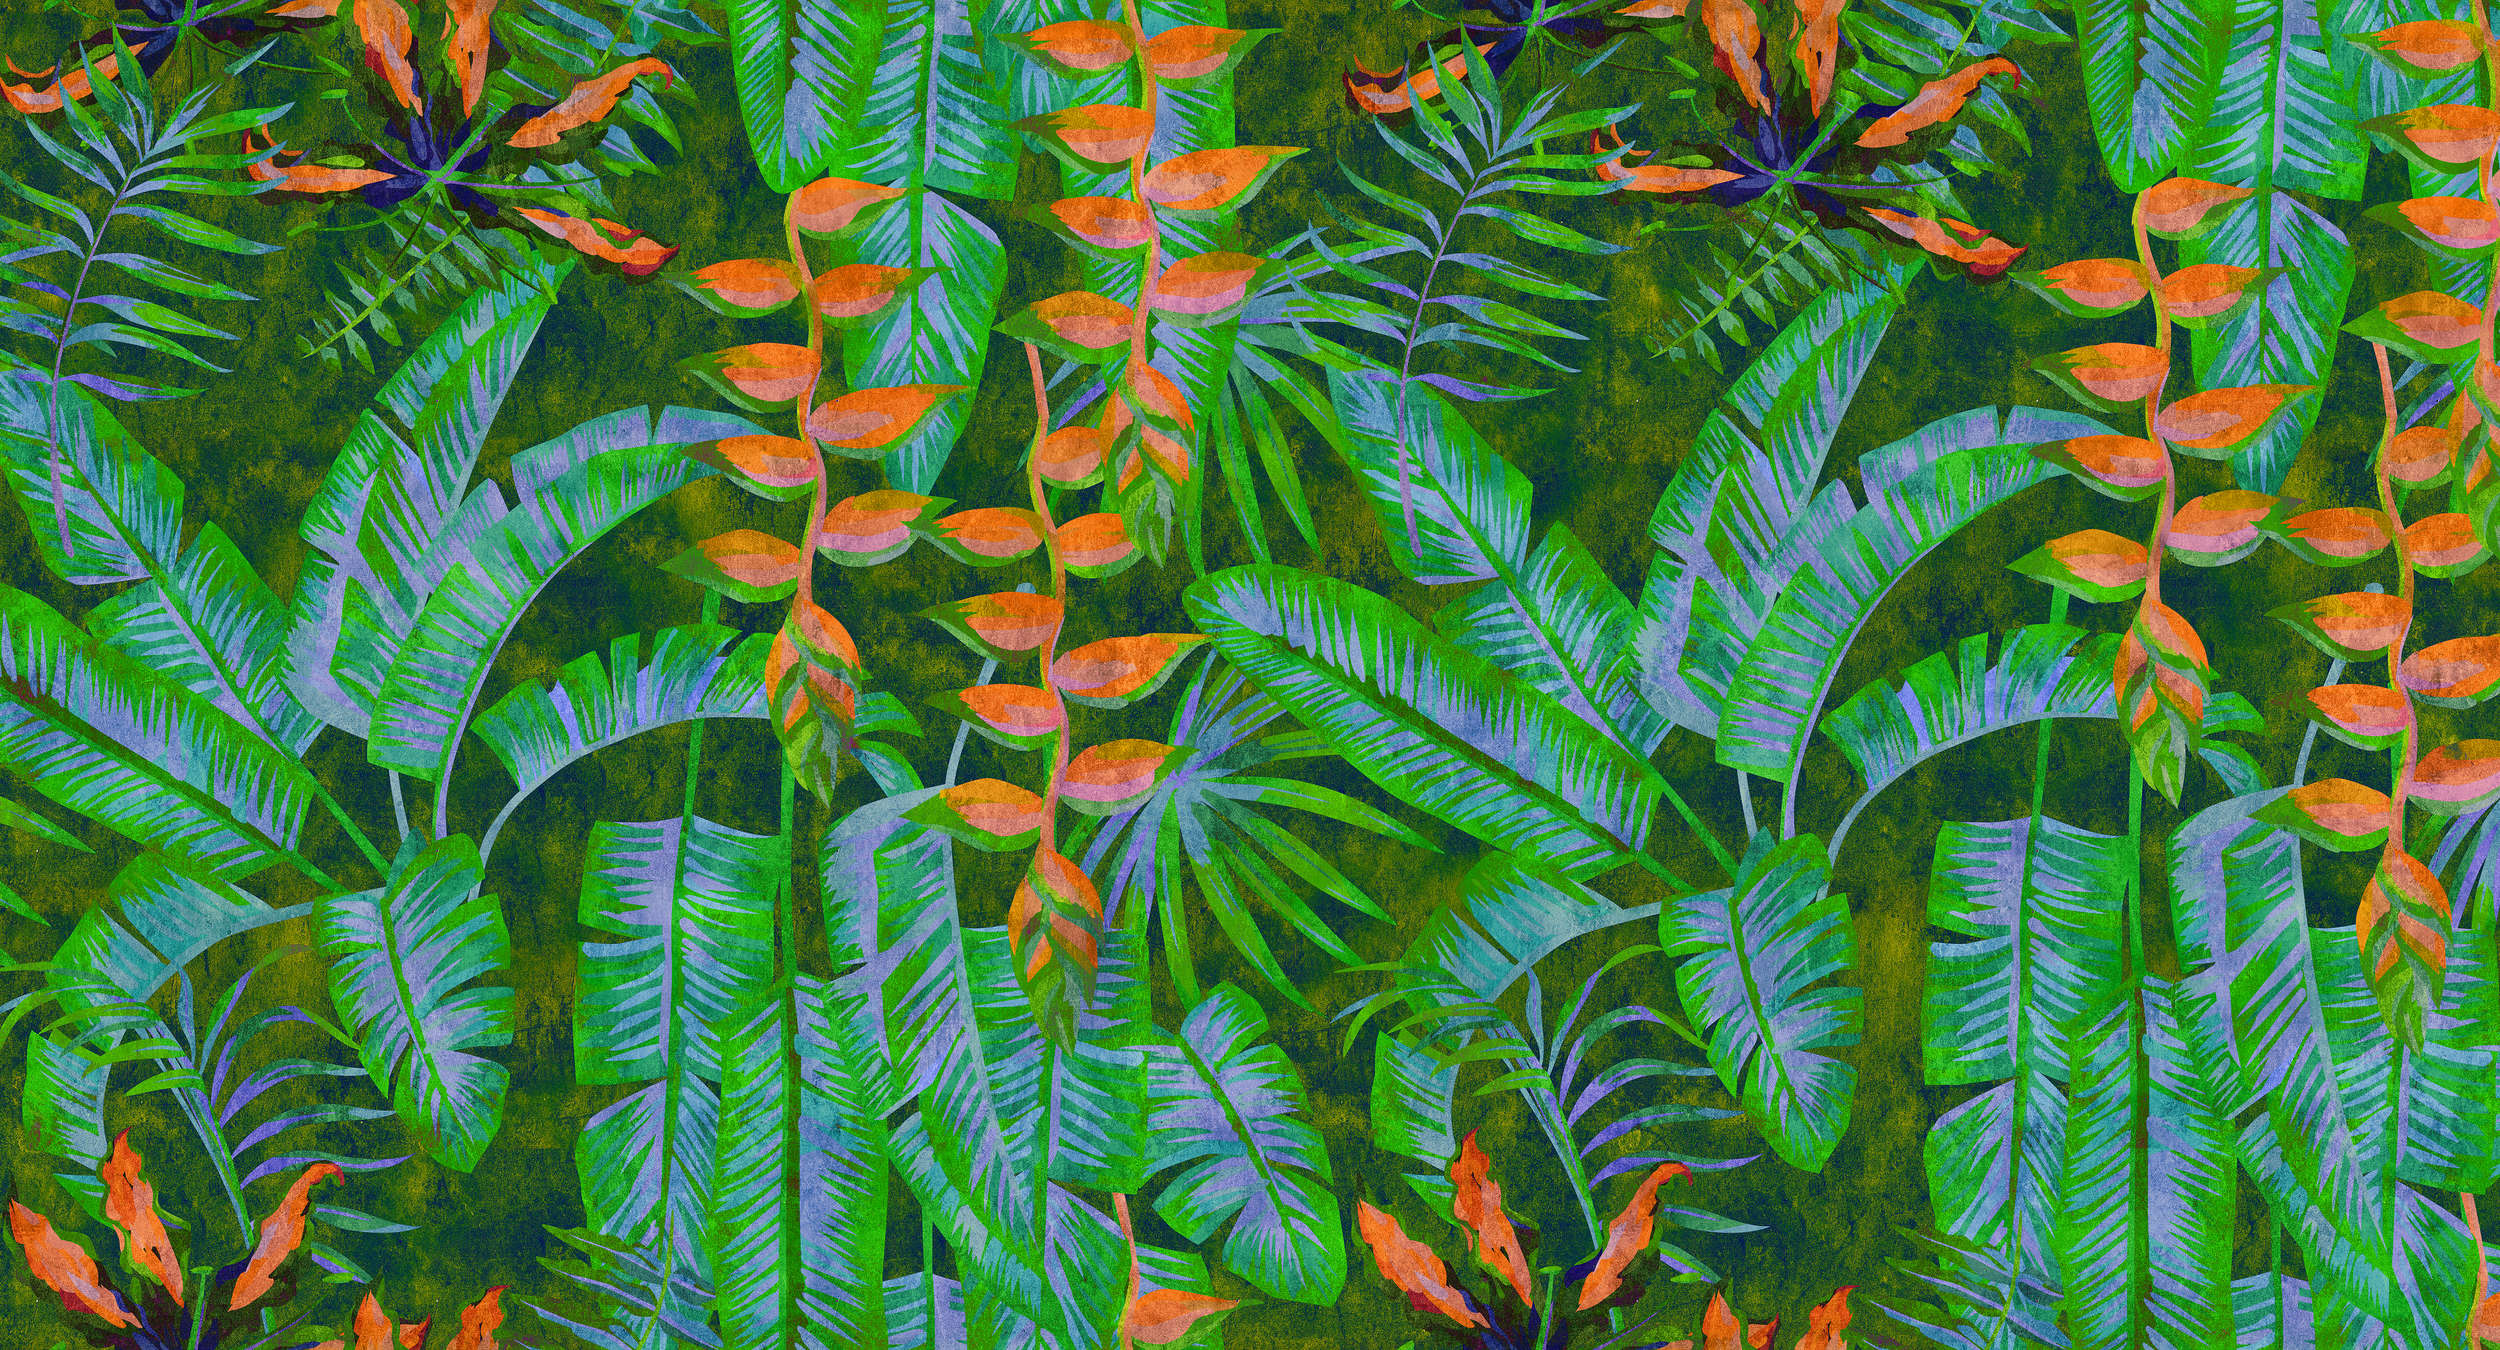             Tropicana 4 - Jungle behang met felle kleuren - vloeipapier structuur - groen, oranje | parelglad vlies
        